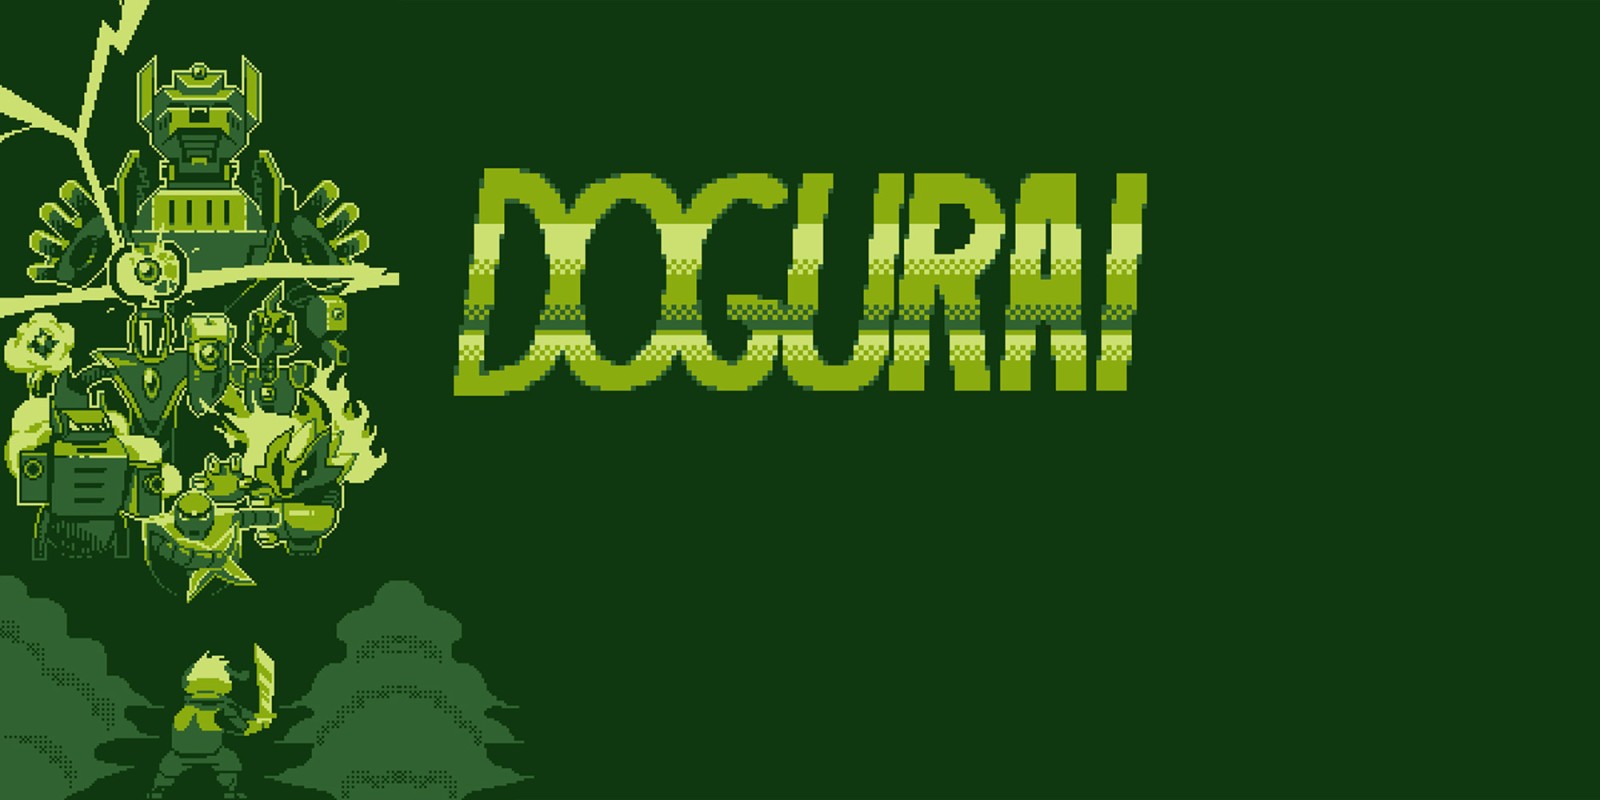 Dogurai